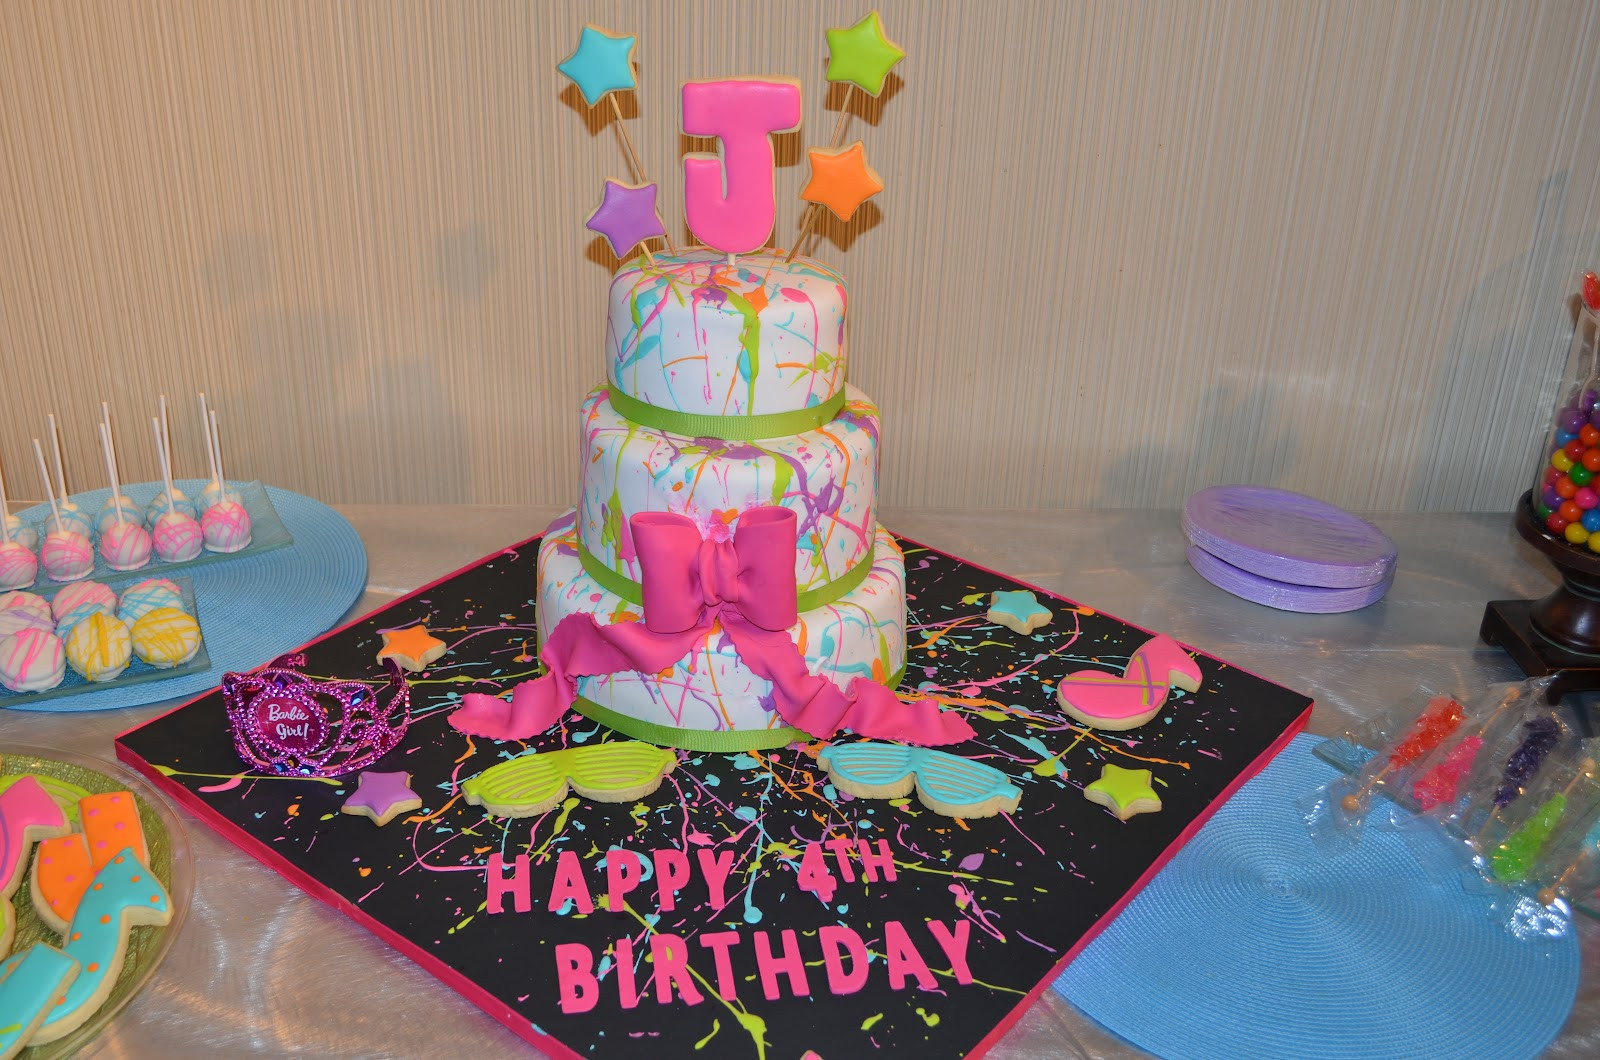 Nicki Minaj Birthday Cake
 S amore Cake Nicki Minaj themed 4th Birthday Party